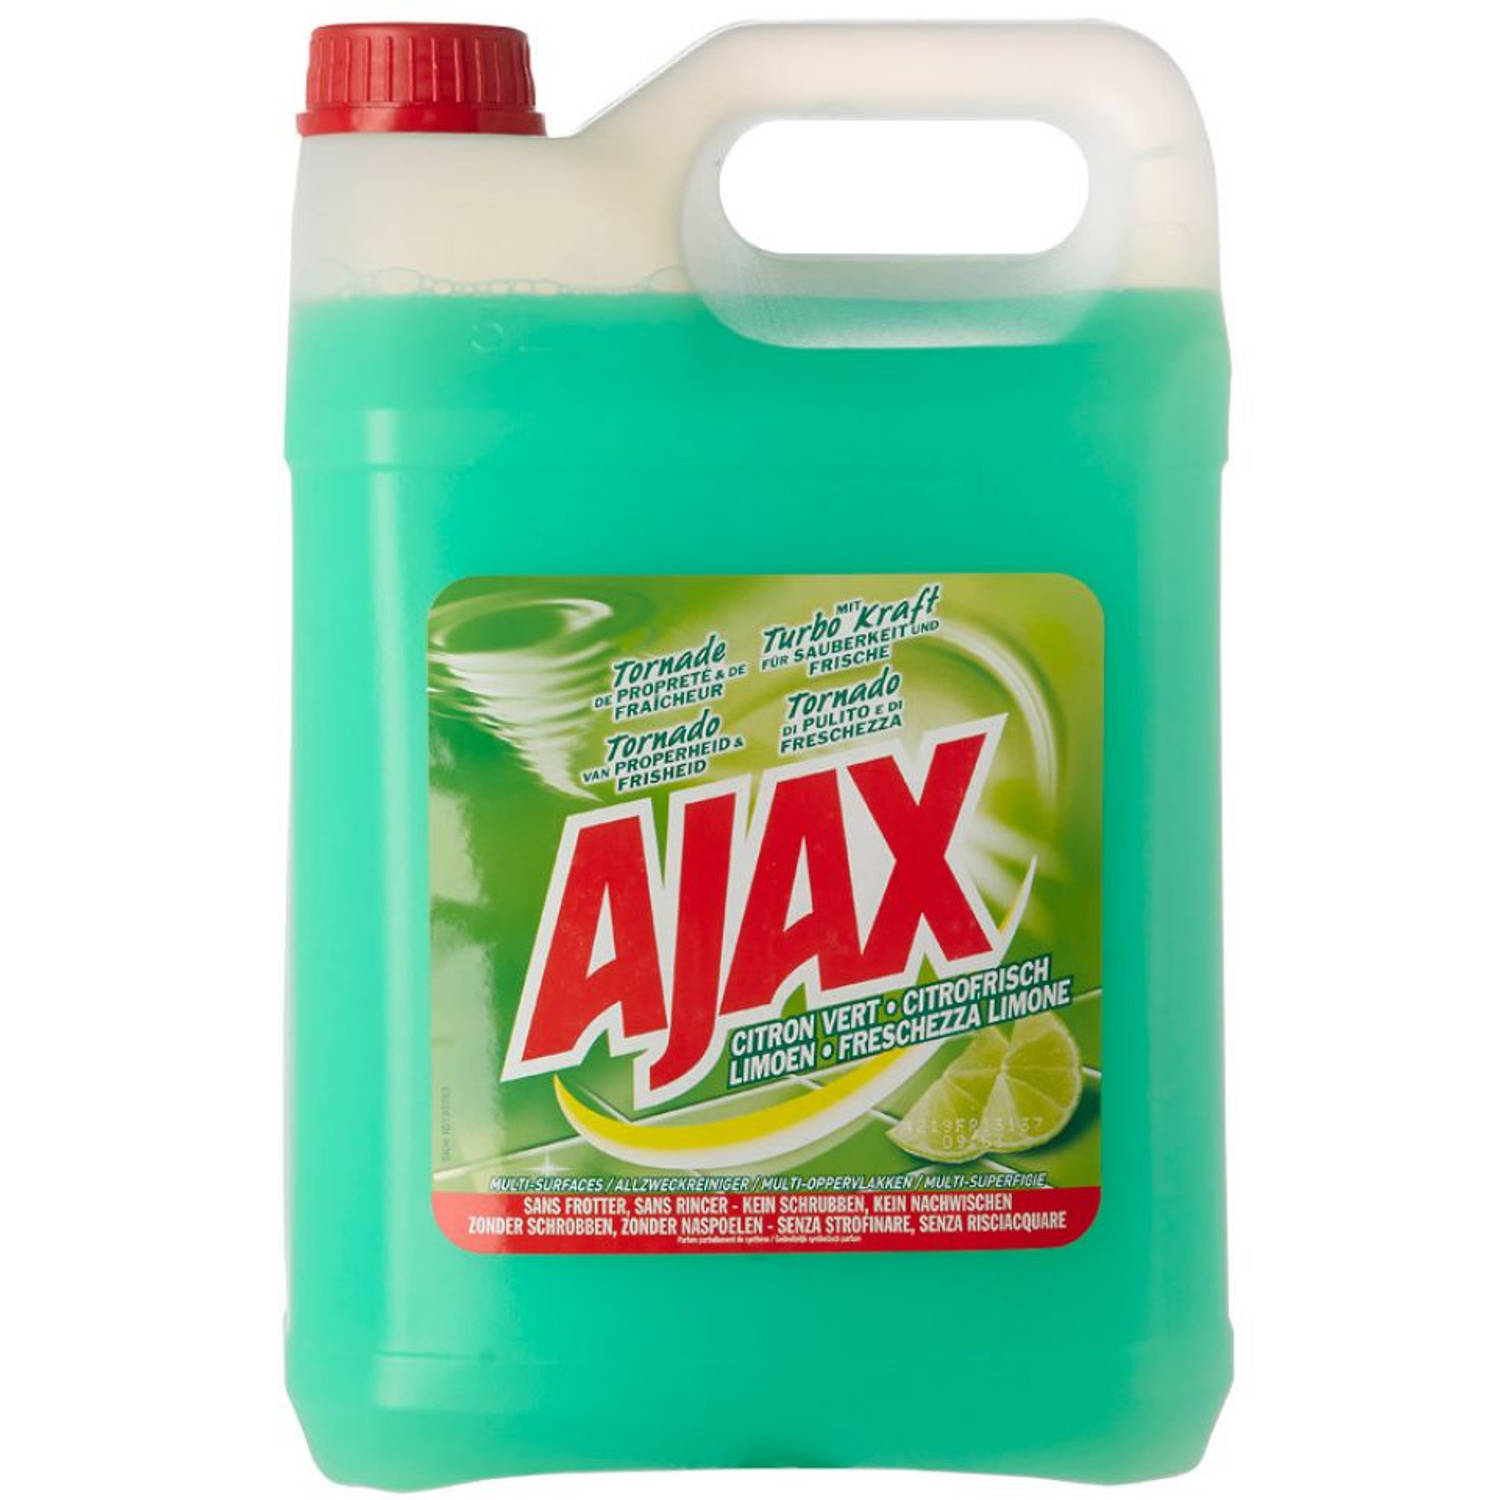 Ajax Allesreiniger Limoen Fris 5000ml